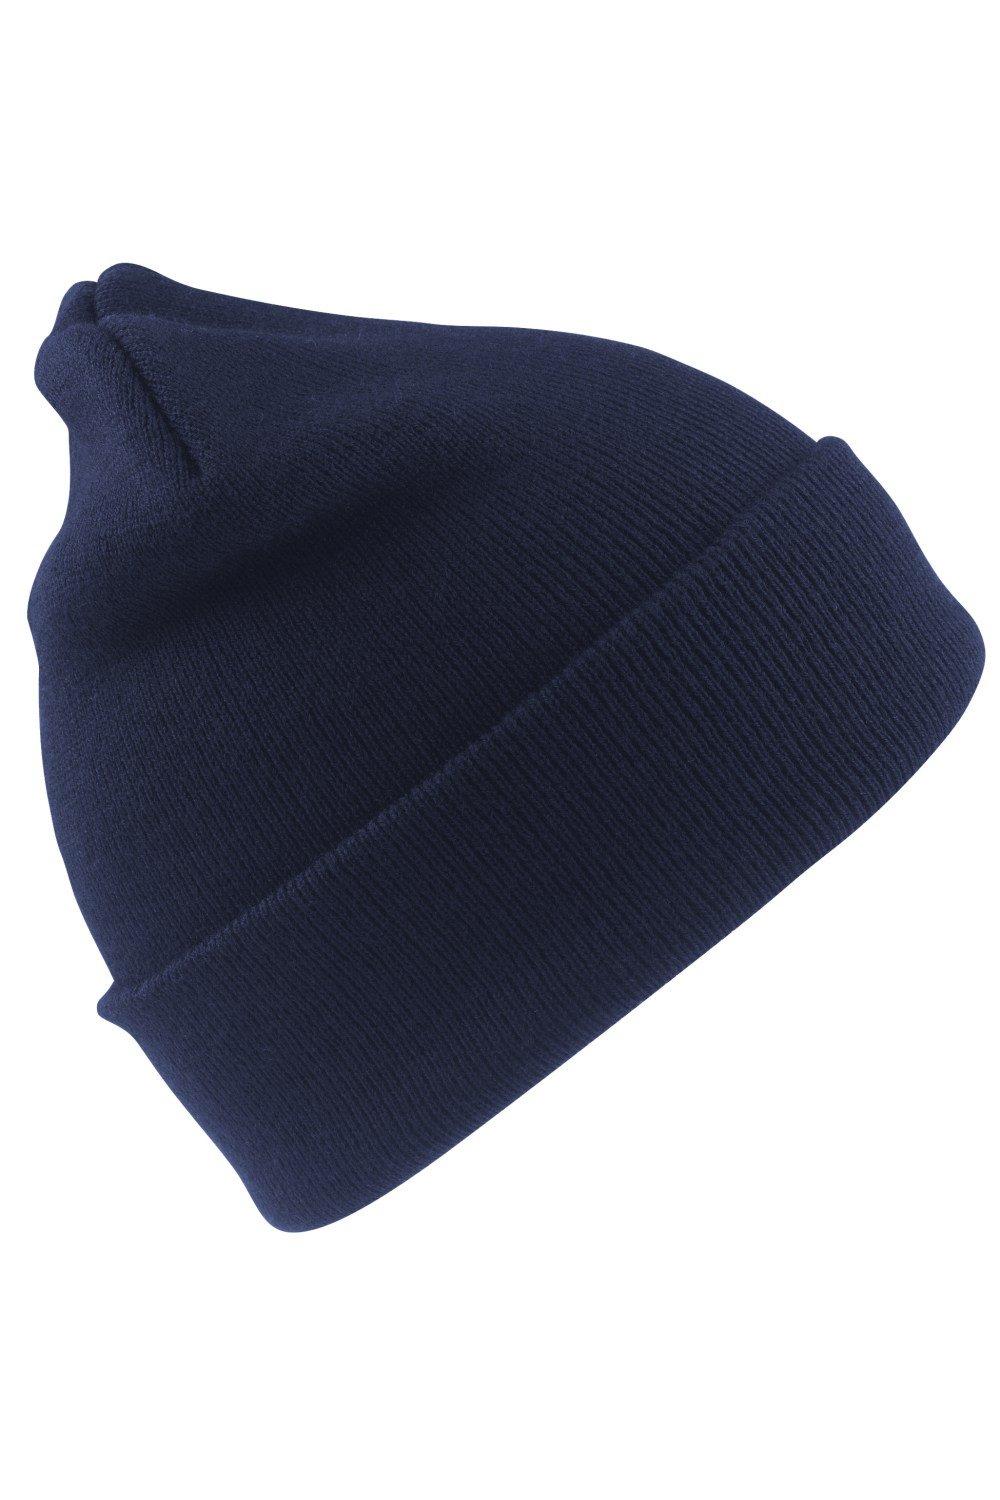 Шерстяная термолыжная/зимняя шапка с утеплителем Thinsulate 3M Result, темно-синий пряжа семеновская пряжа lina 12554 небо 5 шт по 100 г